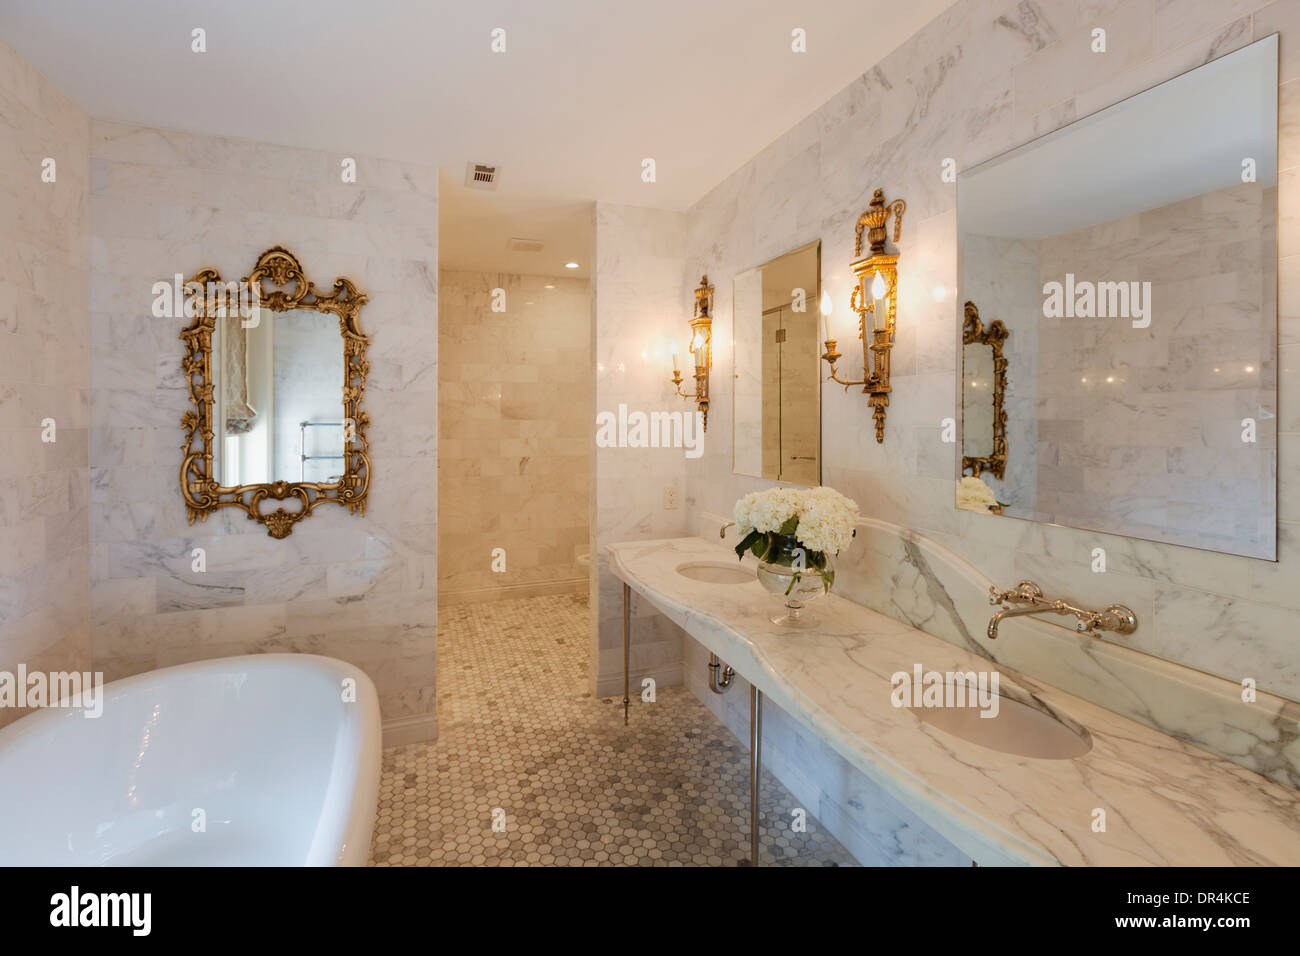 Badewanne und spiegeln in den reich verzierten Badezimmer Stockfoto